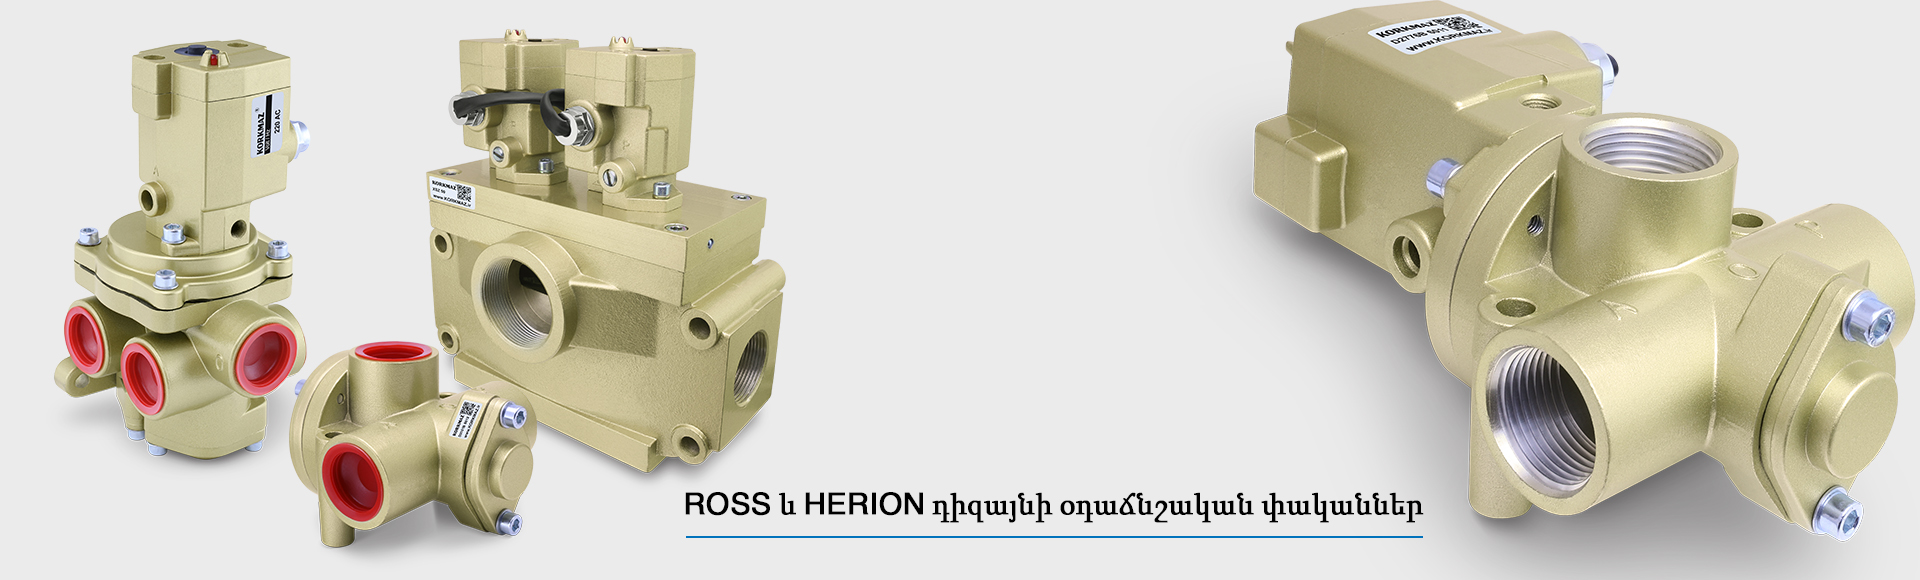 Օդաճնշական փական - Ross դիզայնի փական - Herrion դիզայնի փական